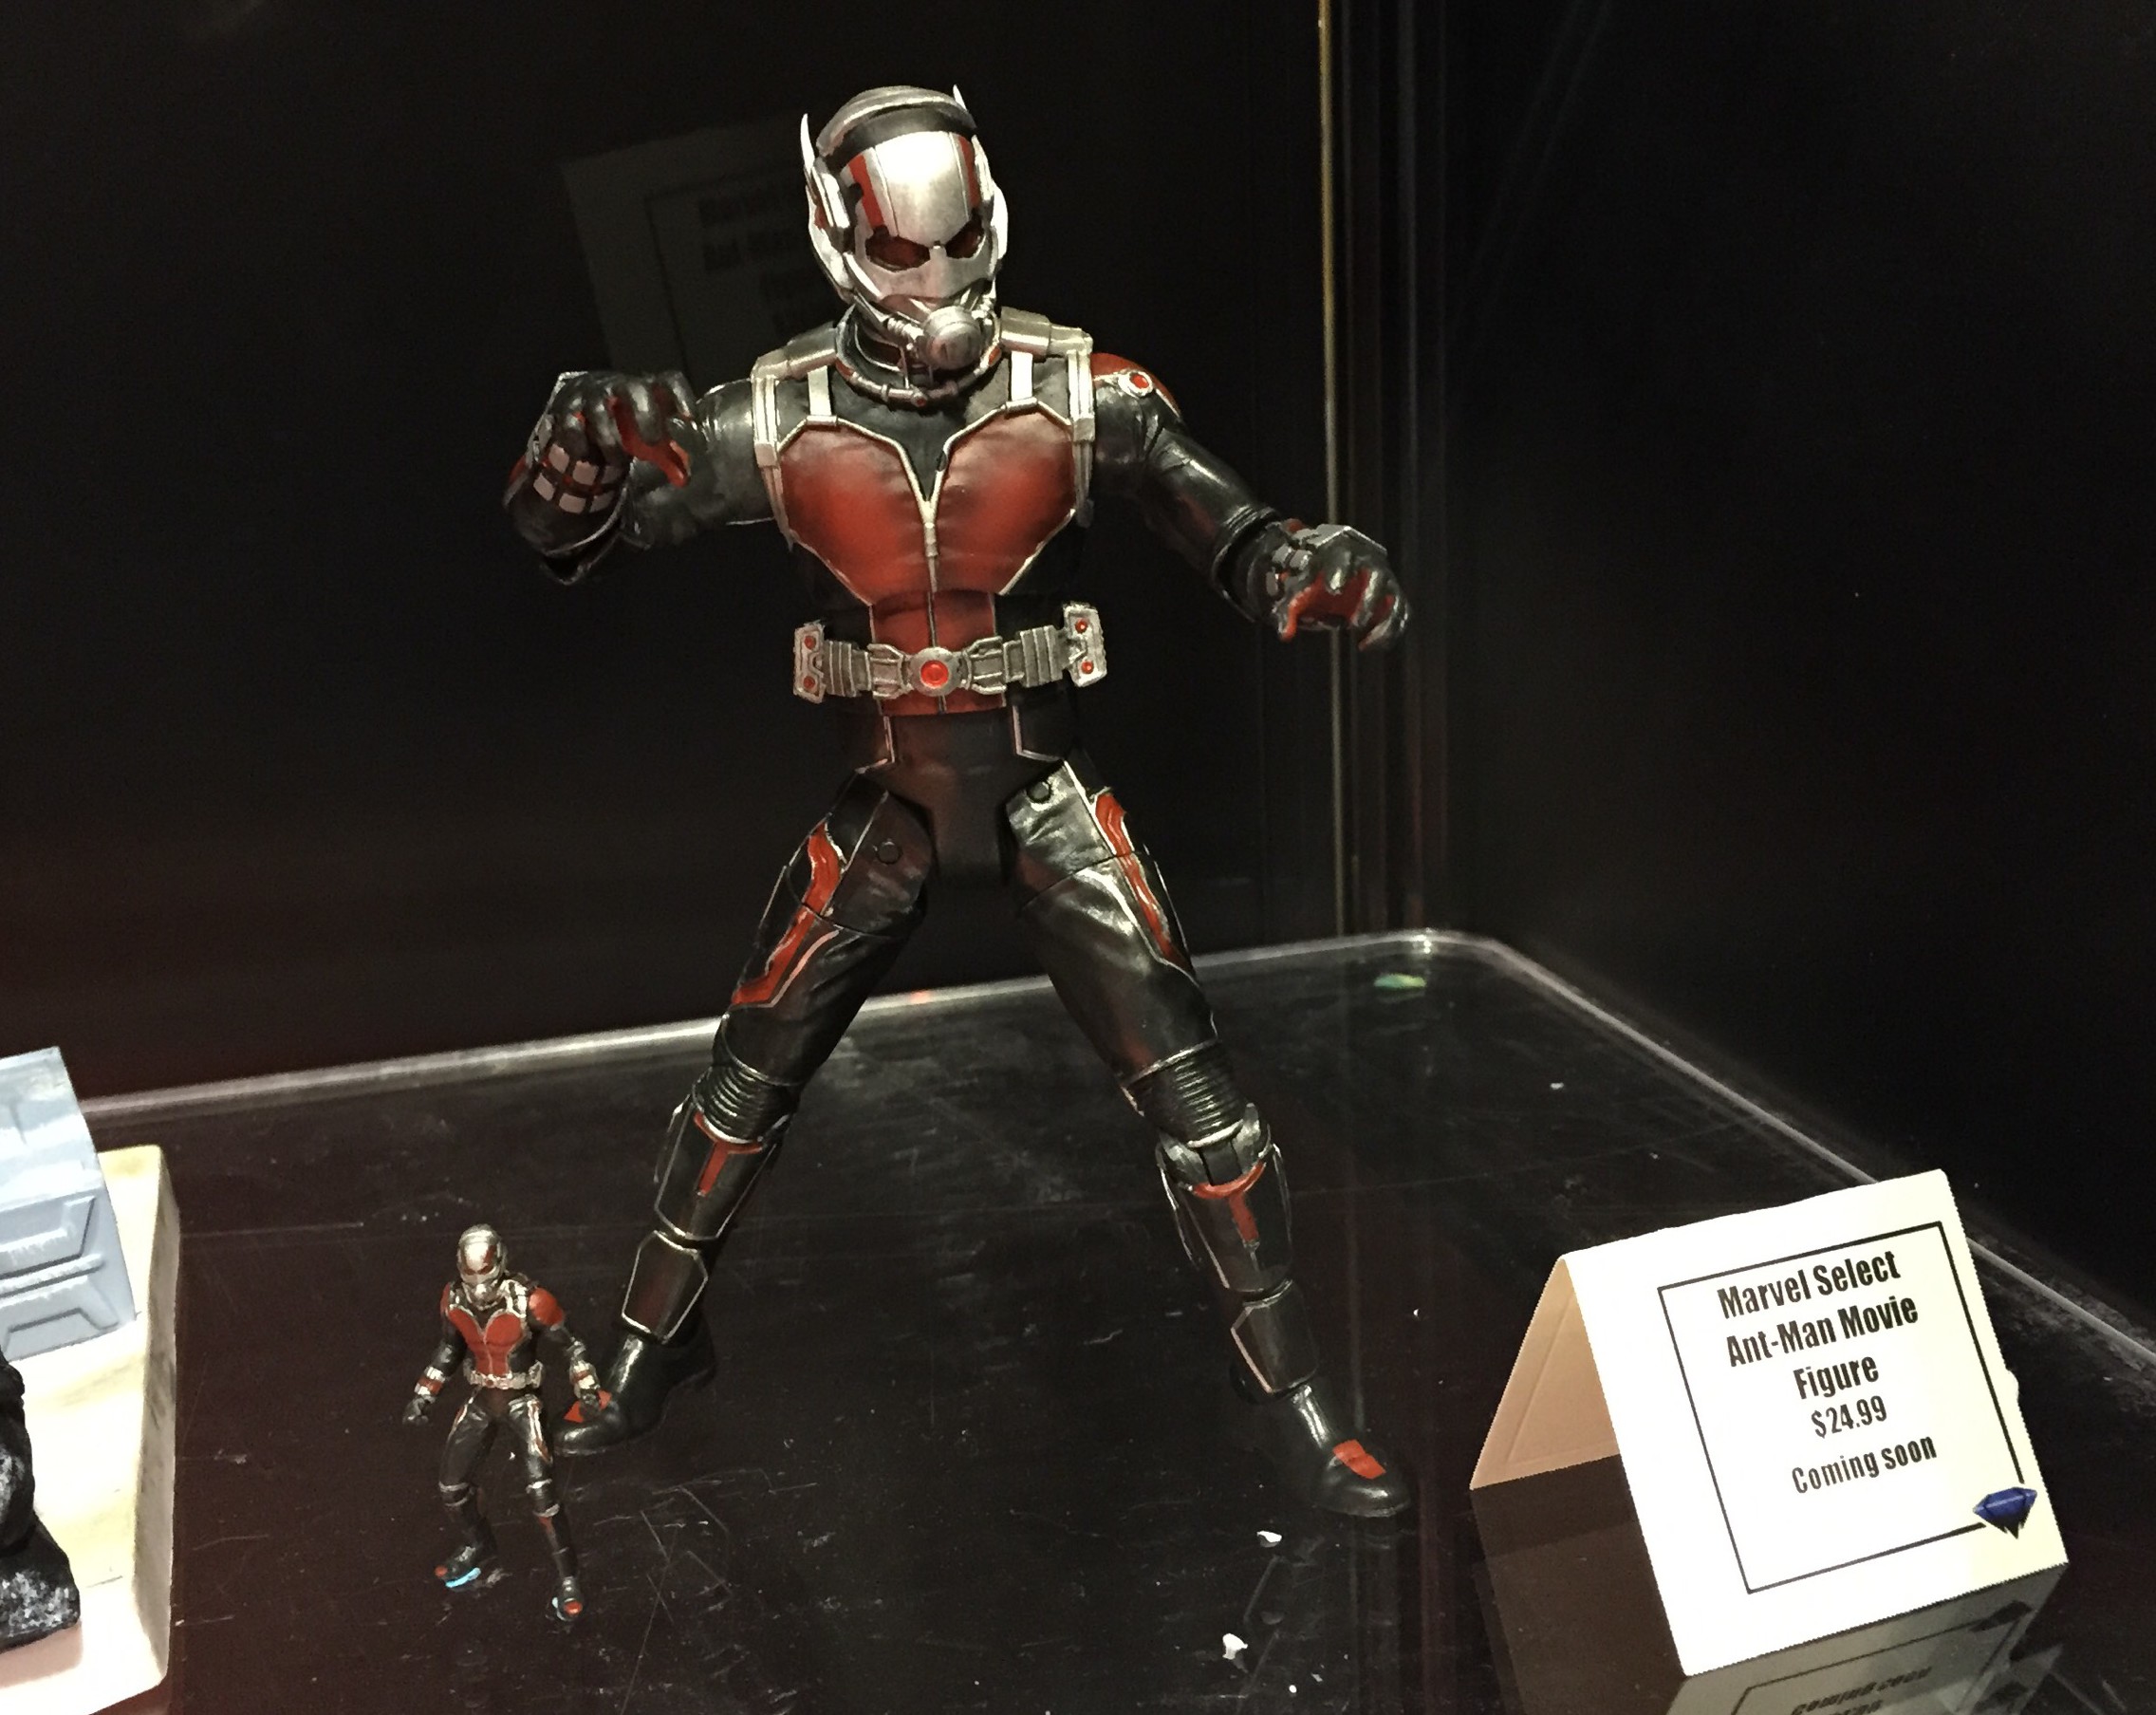 Oceanië Uitreiken domineren Funko Ant-Man POP Vinyls Photos & Order Info! - Marvel Toy News